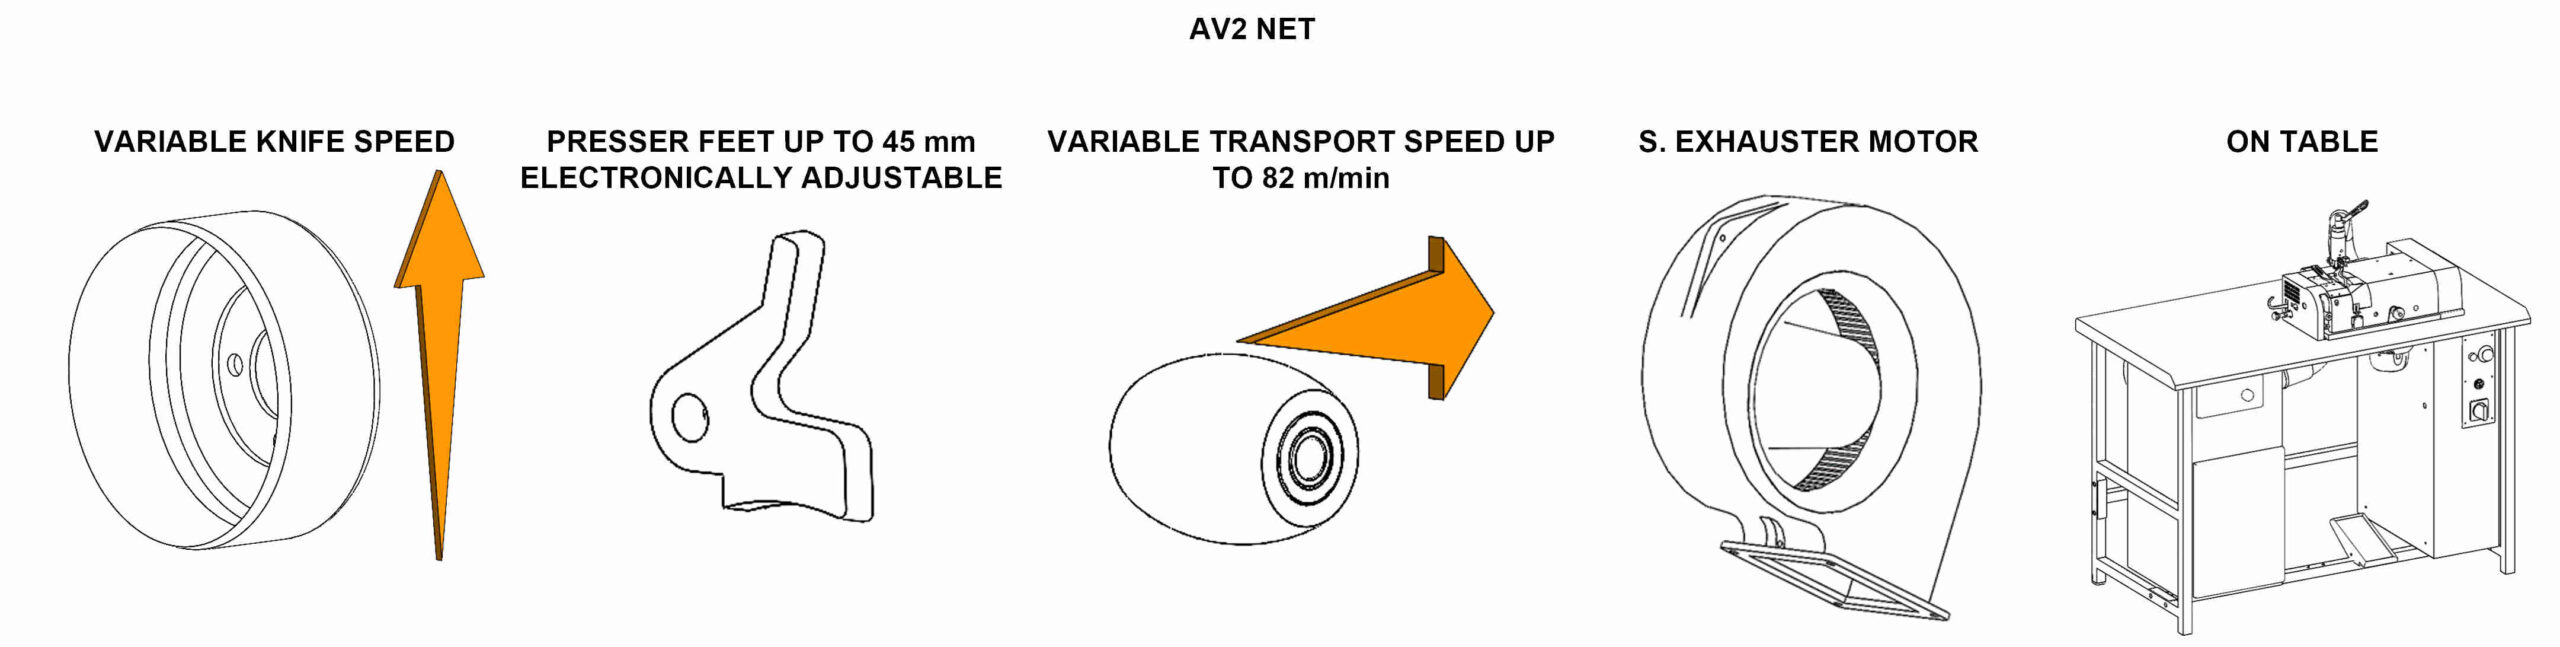 AV2NET Skiving machines - Main technical data